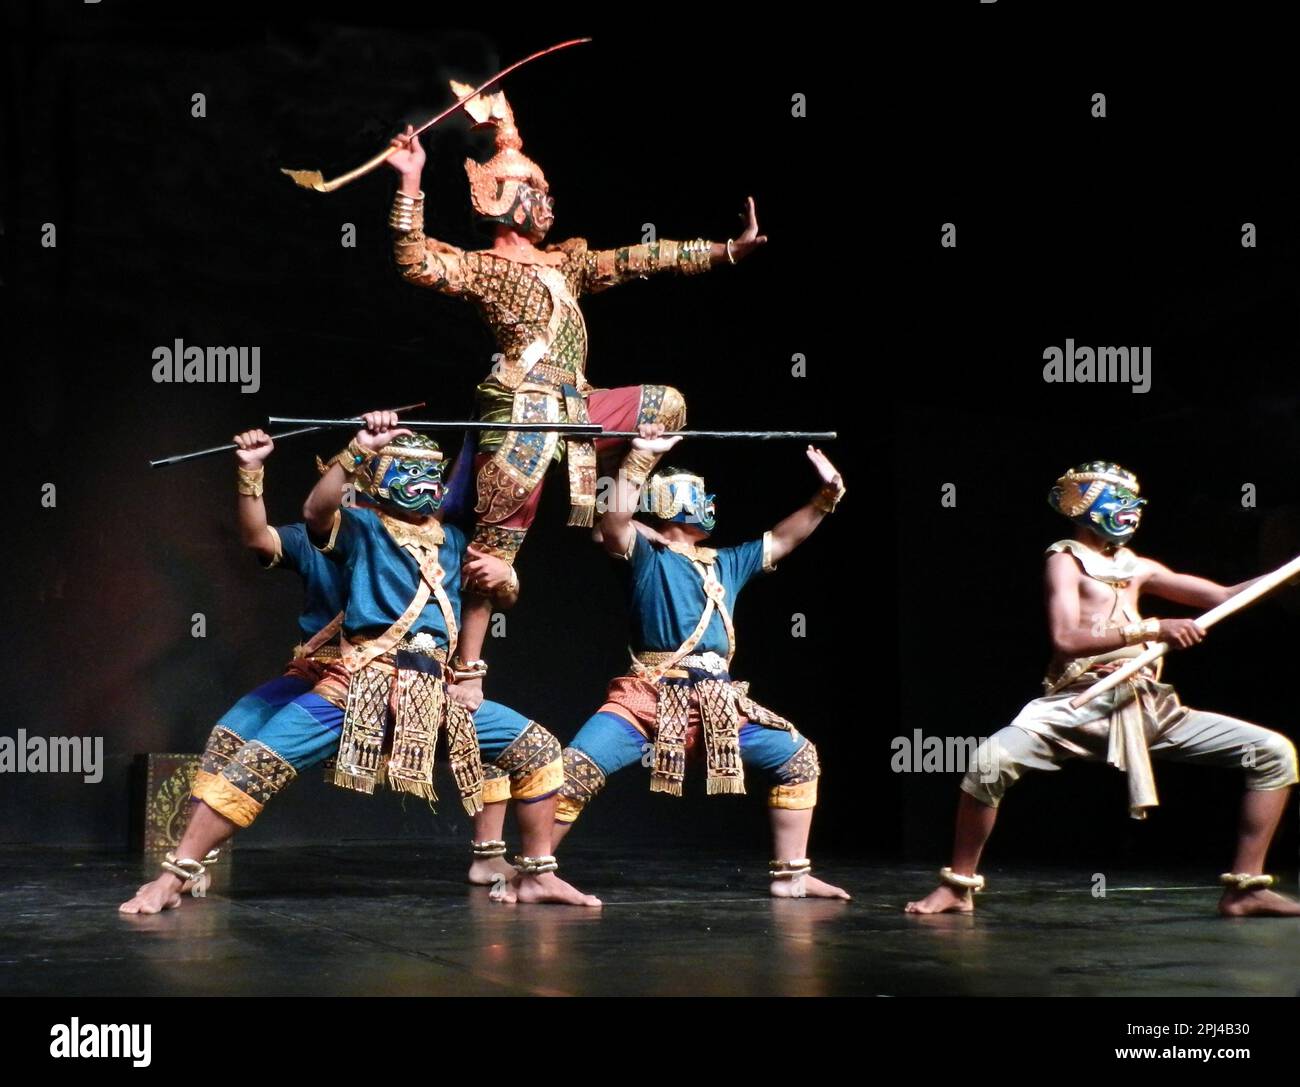 Kambodscha, Phnom Penh: Traditionelle Tanzvorstellung im Nationalmuseum, einschließlich einer Vielzahl klassischer und folkloristischer Tänze. Kampf zwischen Rama und Ravana Stockfoto